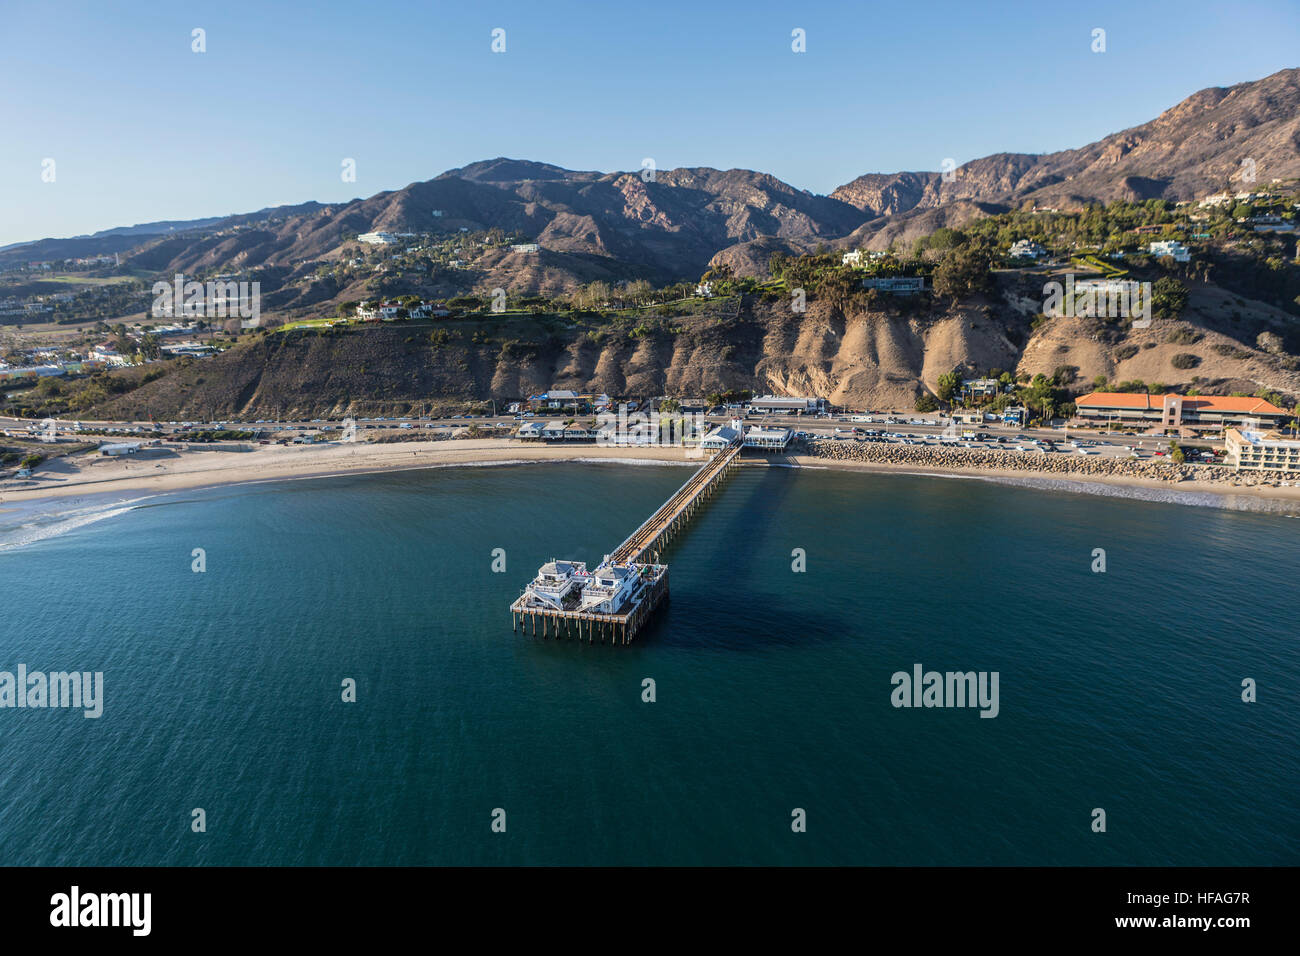 Vue aérienne de la Malibu Pier historique, les plages et les montagnes de Santa Monica en Californie du Sud sur la côte du Pacifique. Banque D'Images